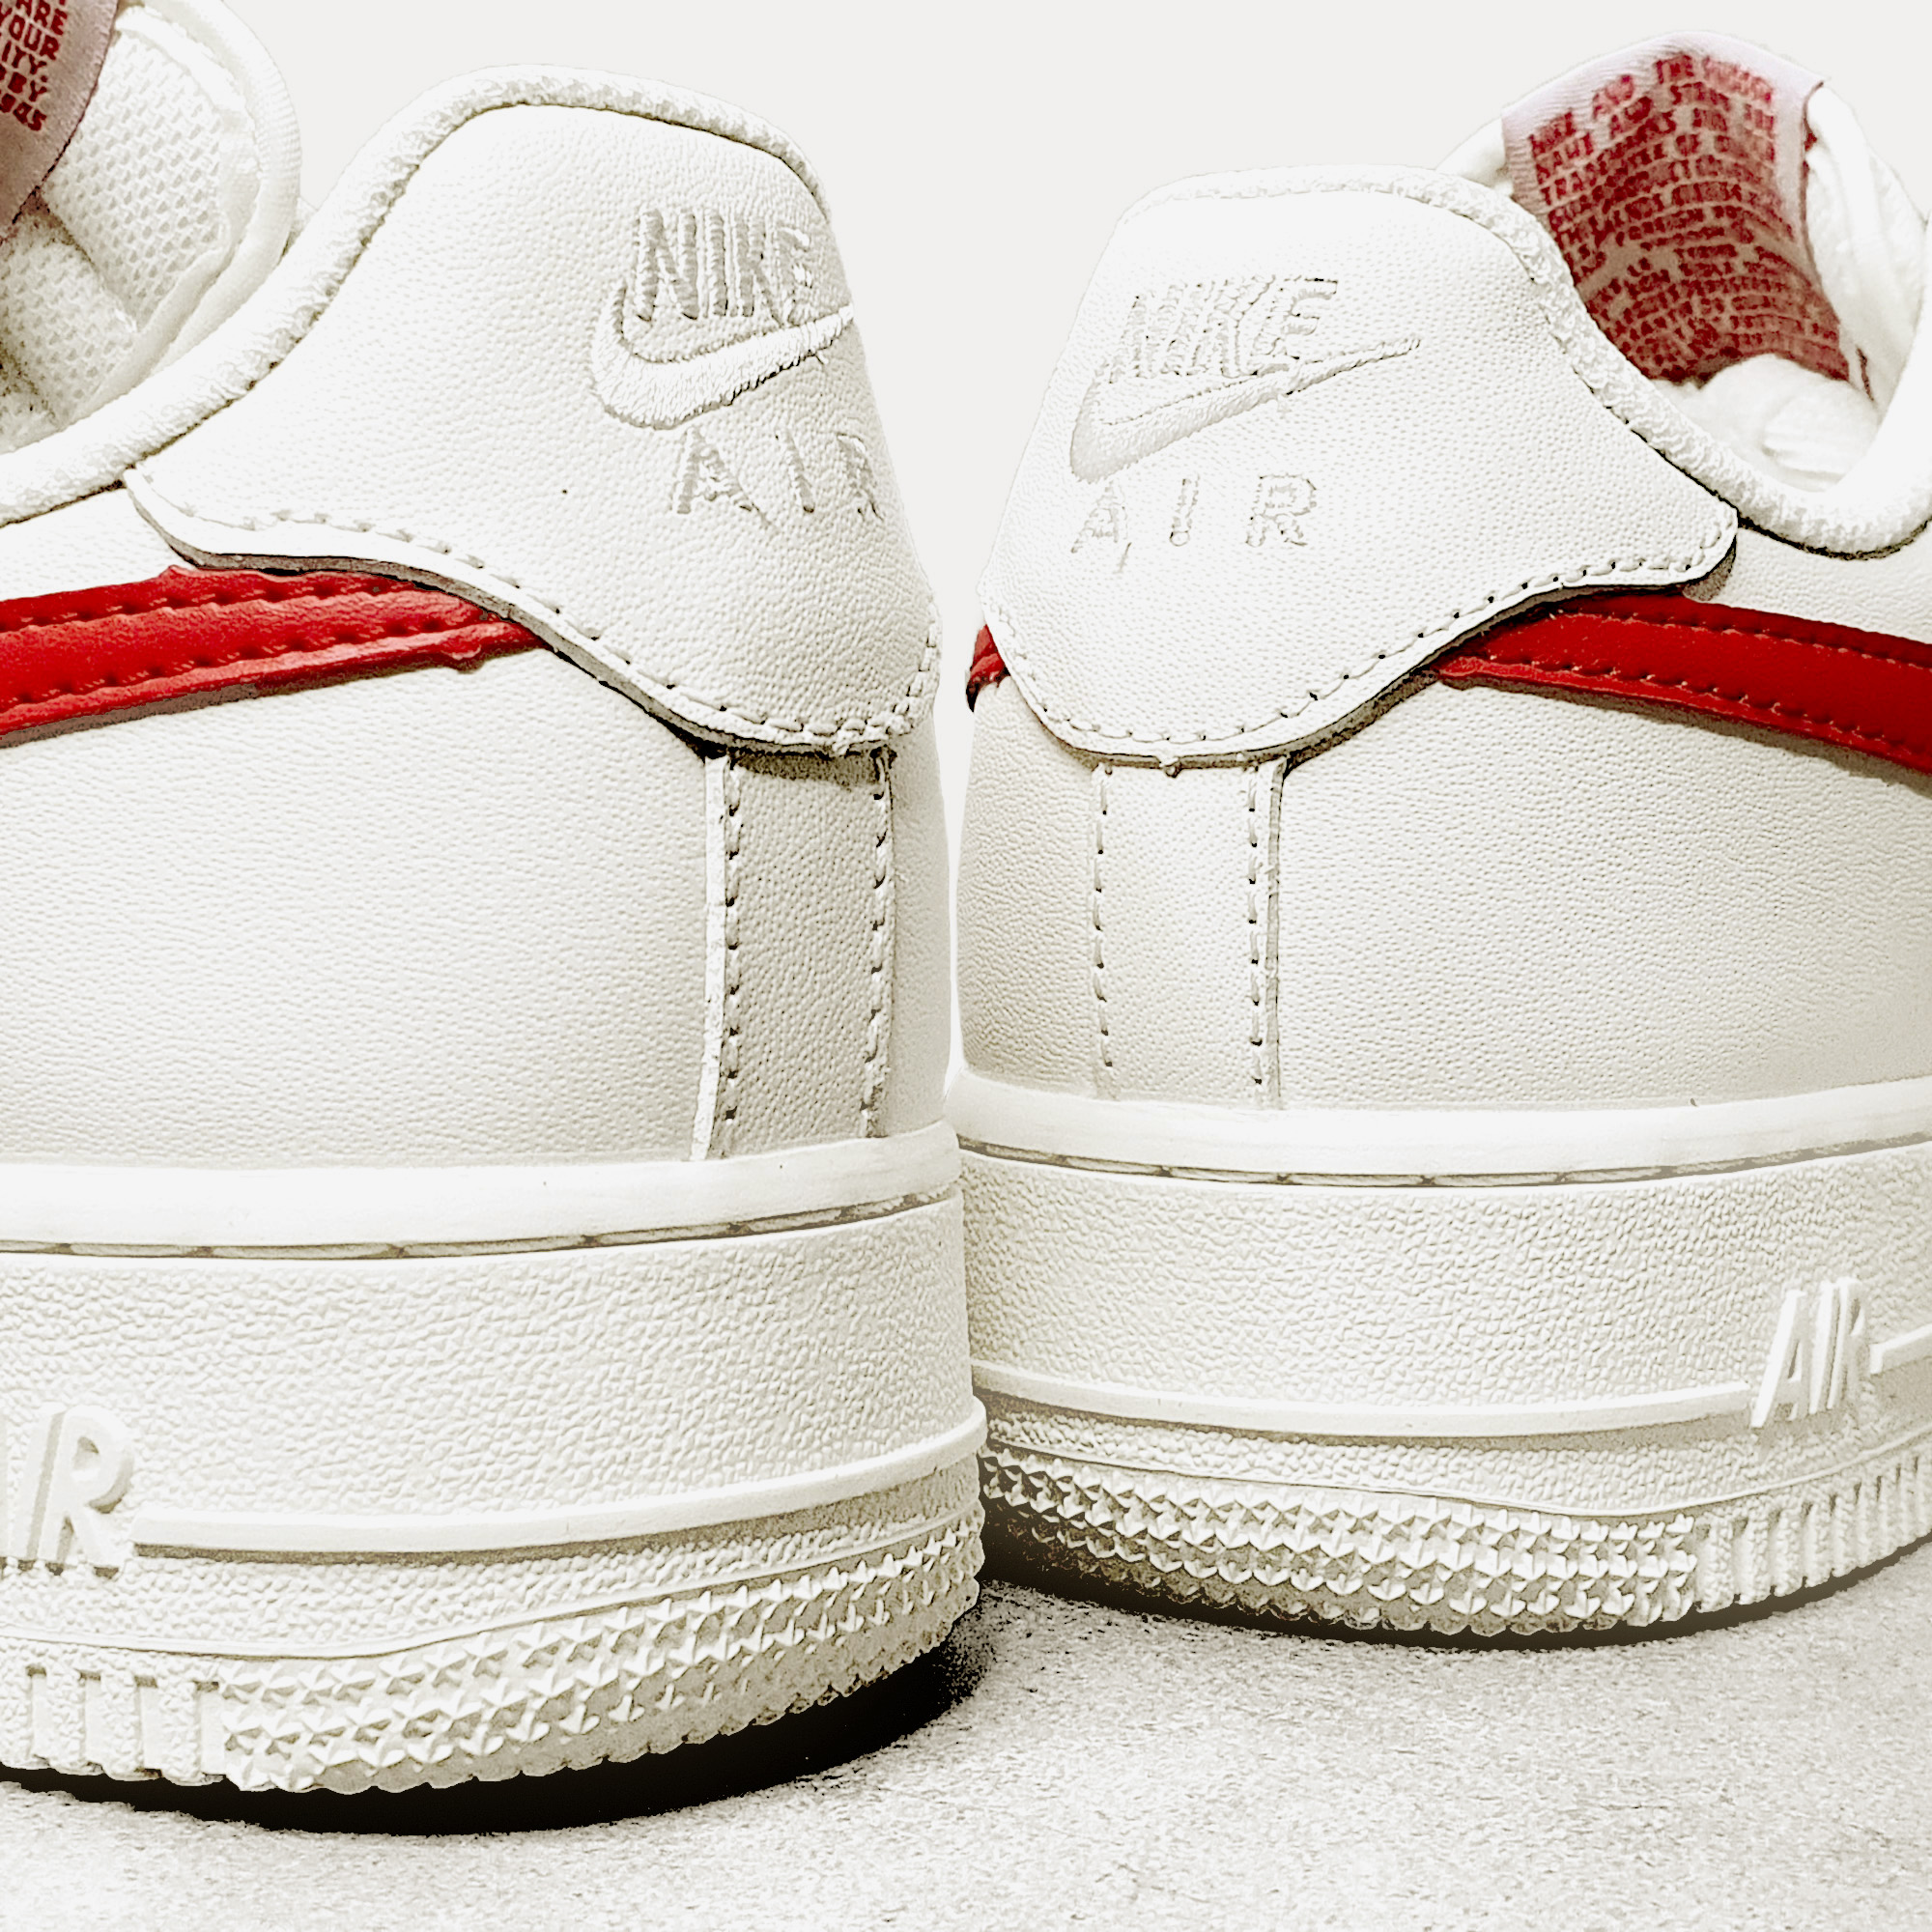 Nike Air Force 1 White Red Hook - Teemosneaker